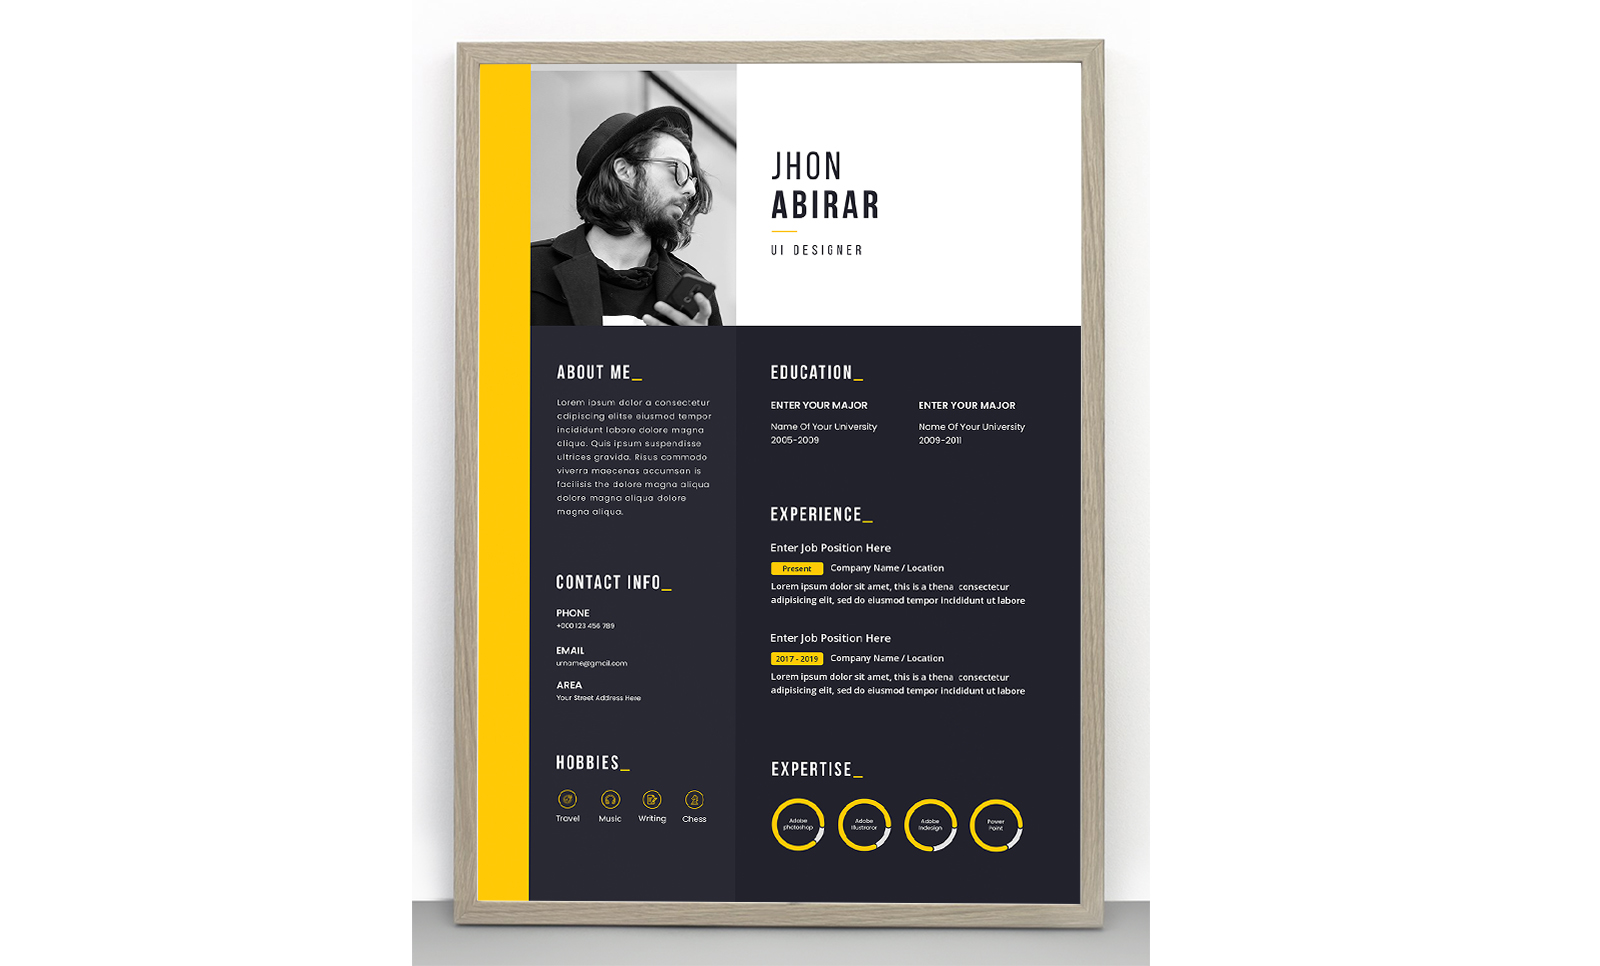 Jhon Abirar Resume Template